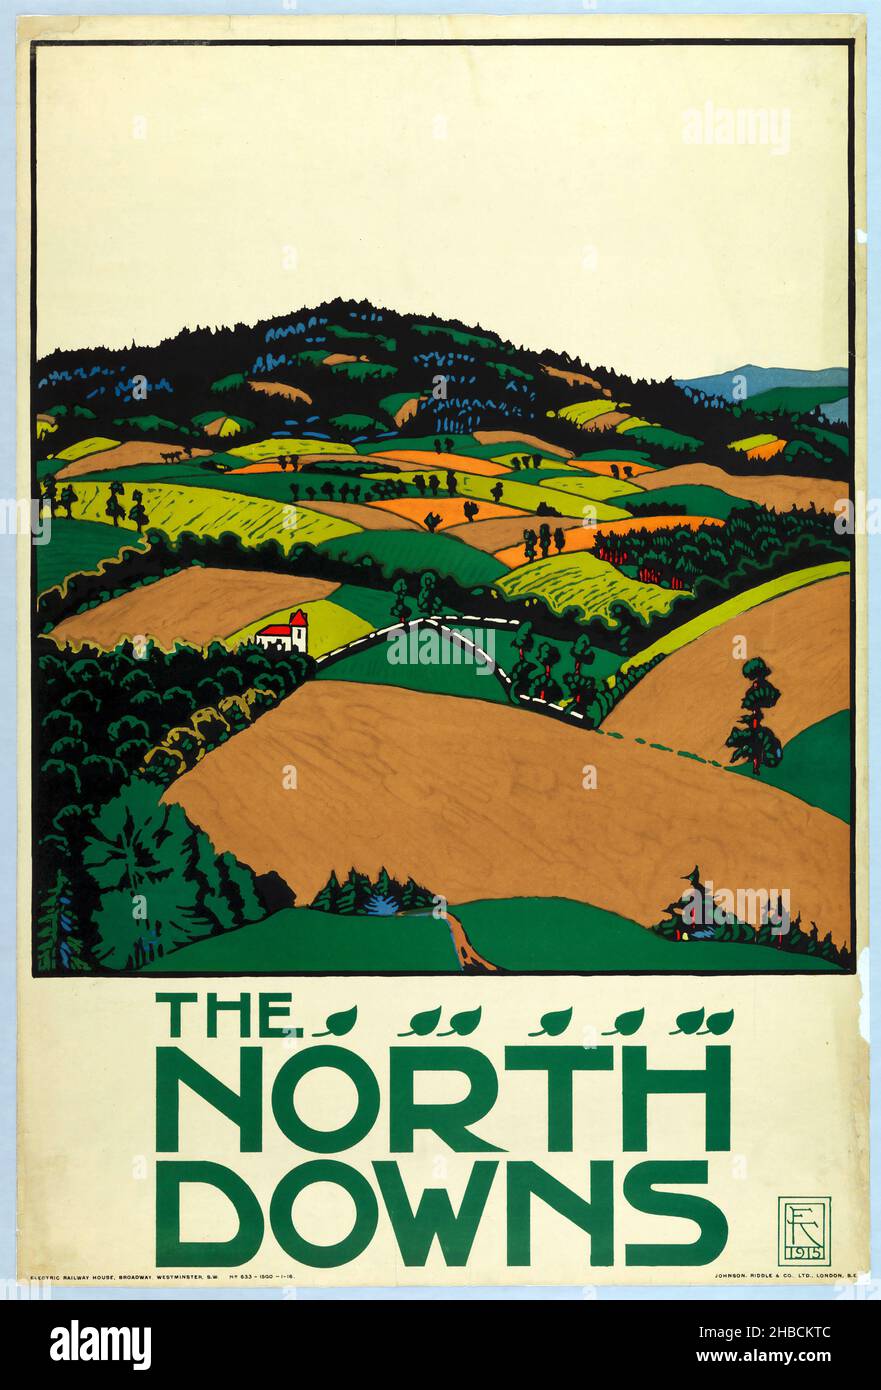 The North Downs von Edward McKnight Kauffer Poster - 1915 - Vintage-Werbung. Britische Eisenbahn. Stockfoto